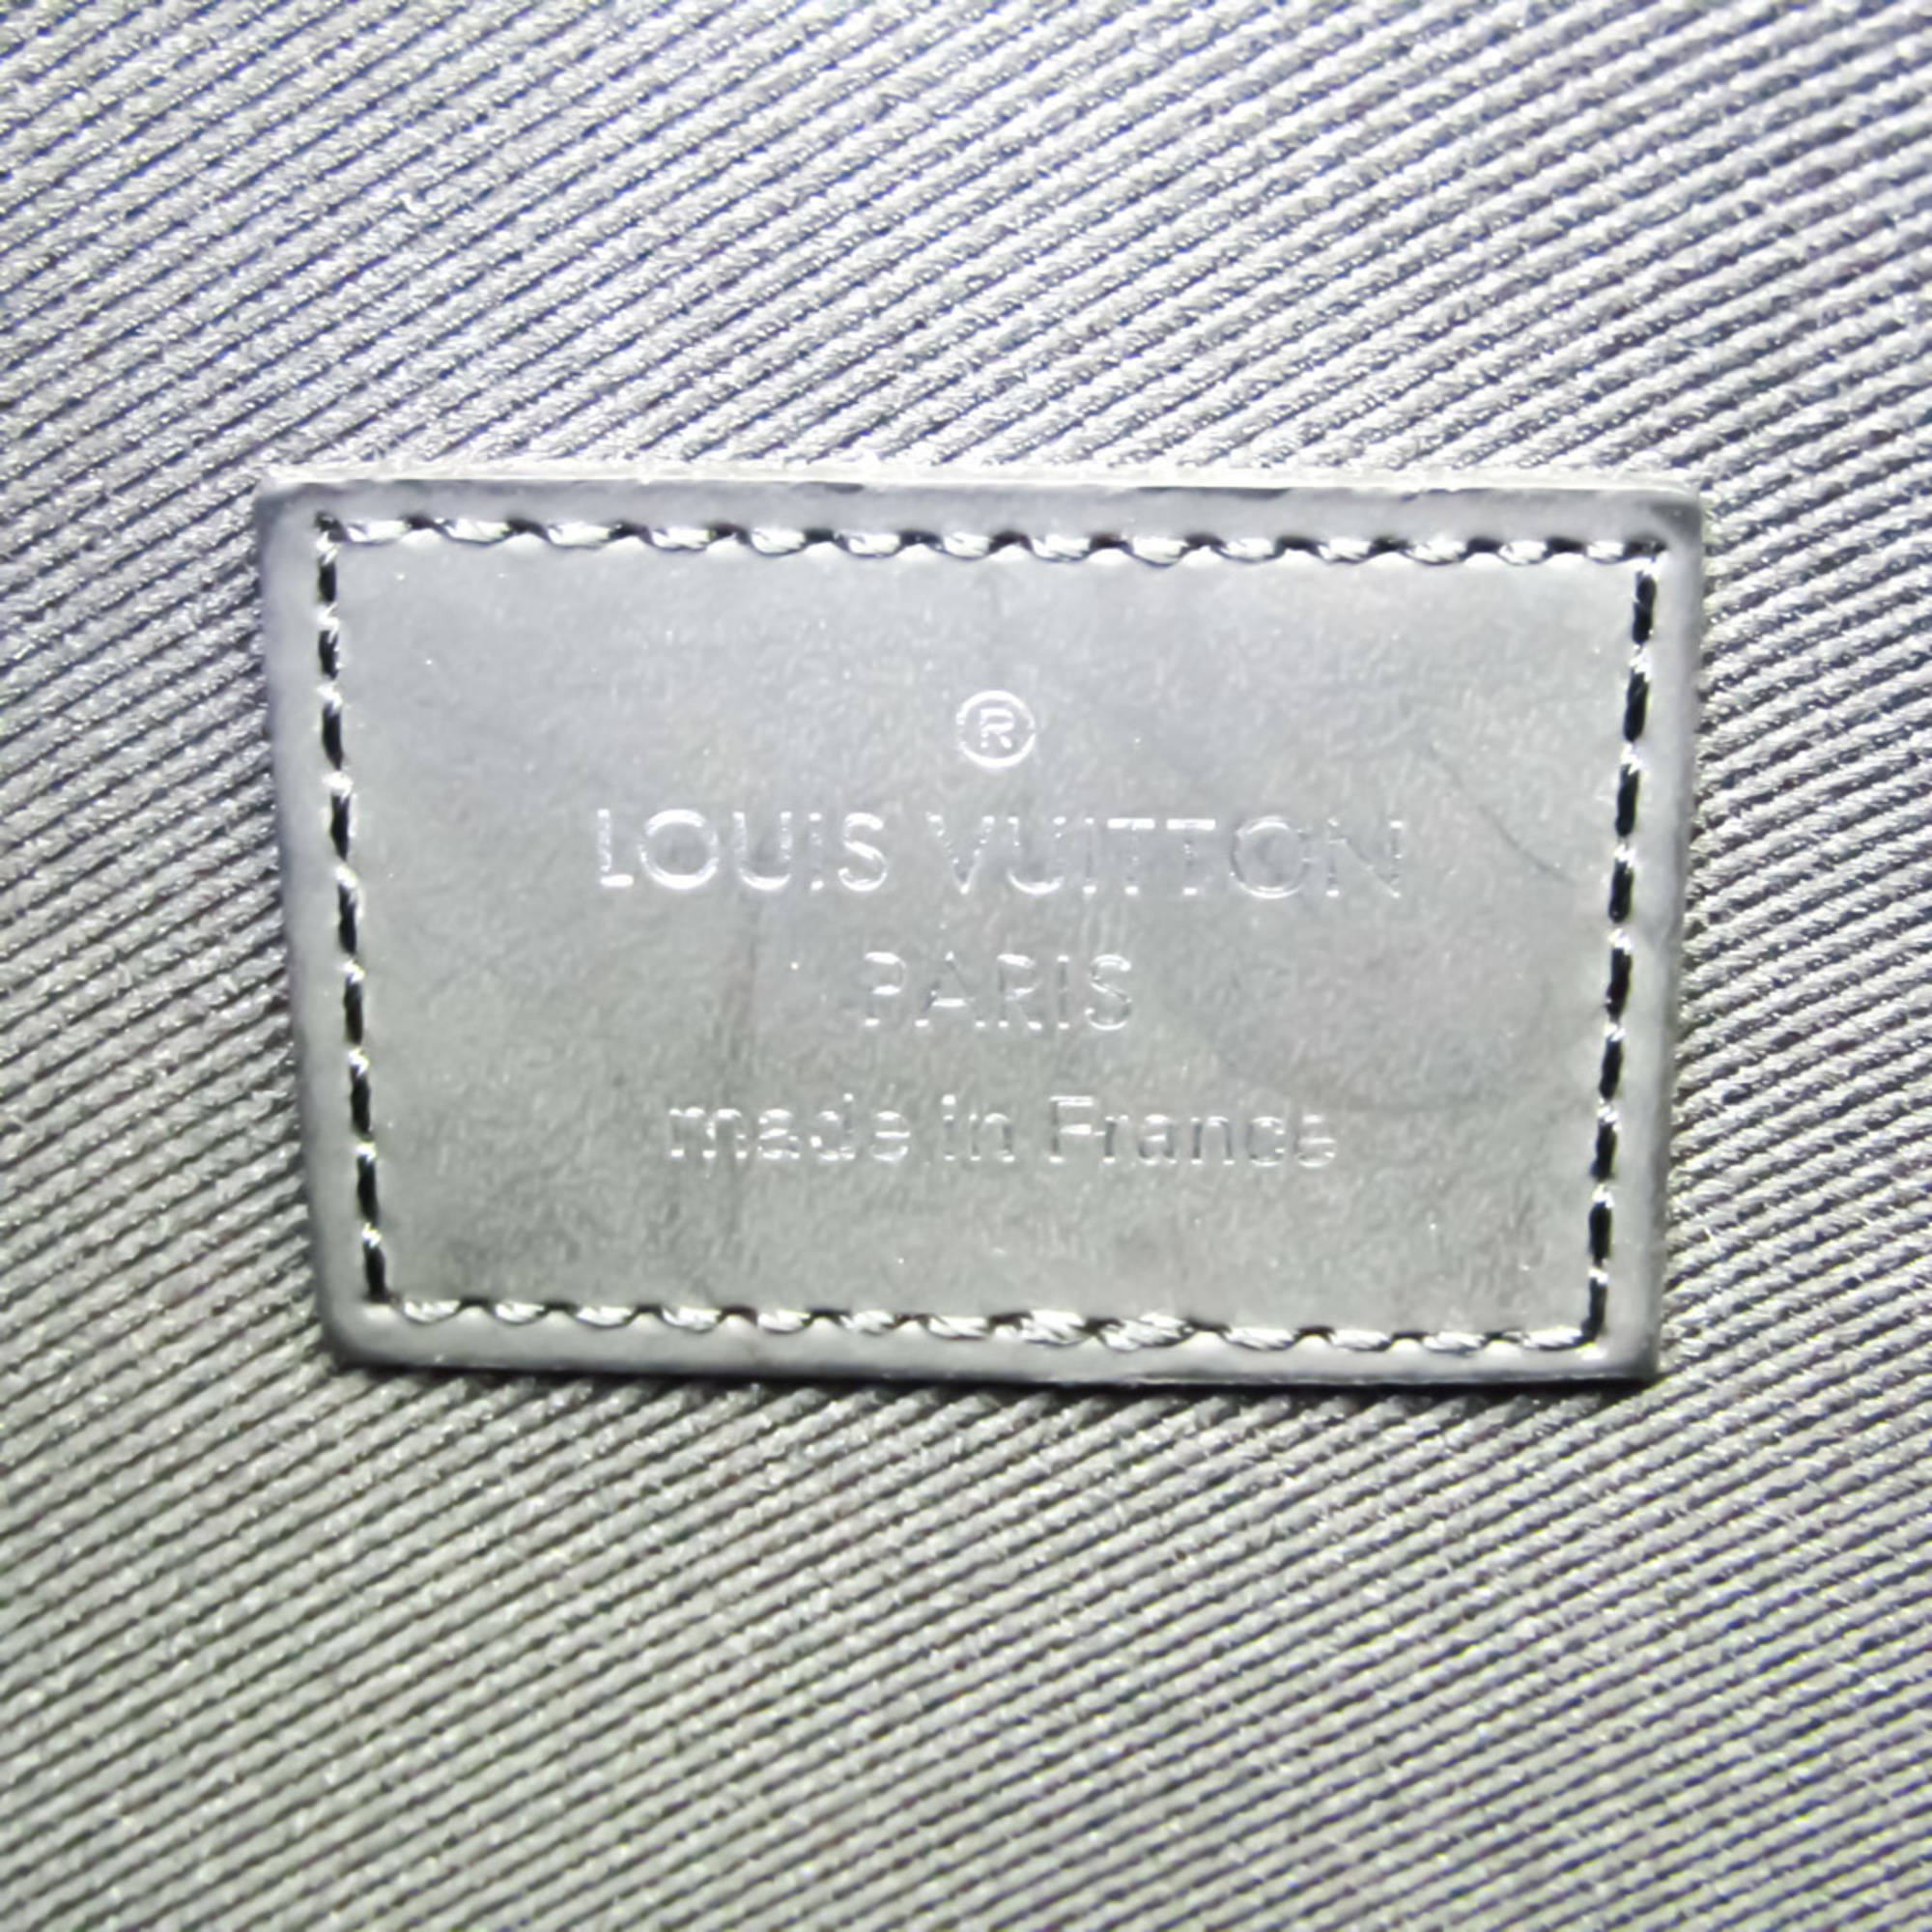 Louis Vuitton Damier Graphite Pochette Jour GM Christopher Nemeth M61232 Men's Clutch Bag Damier Graphite